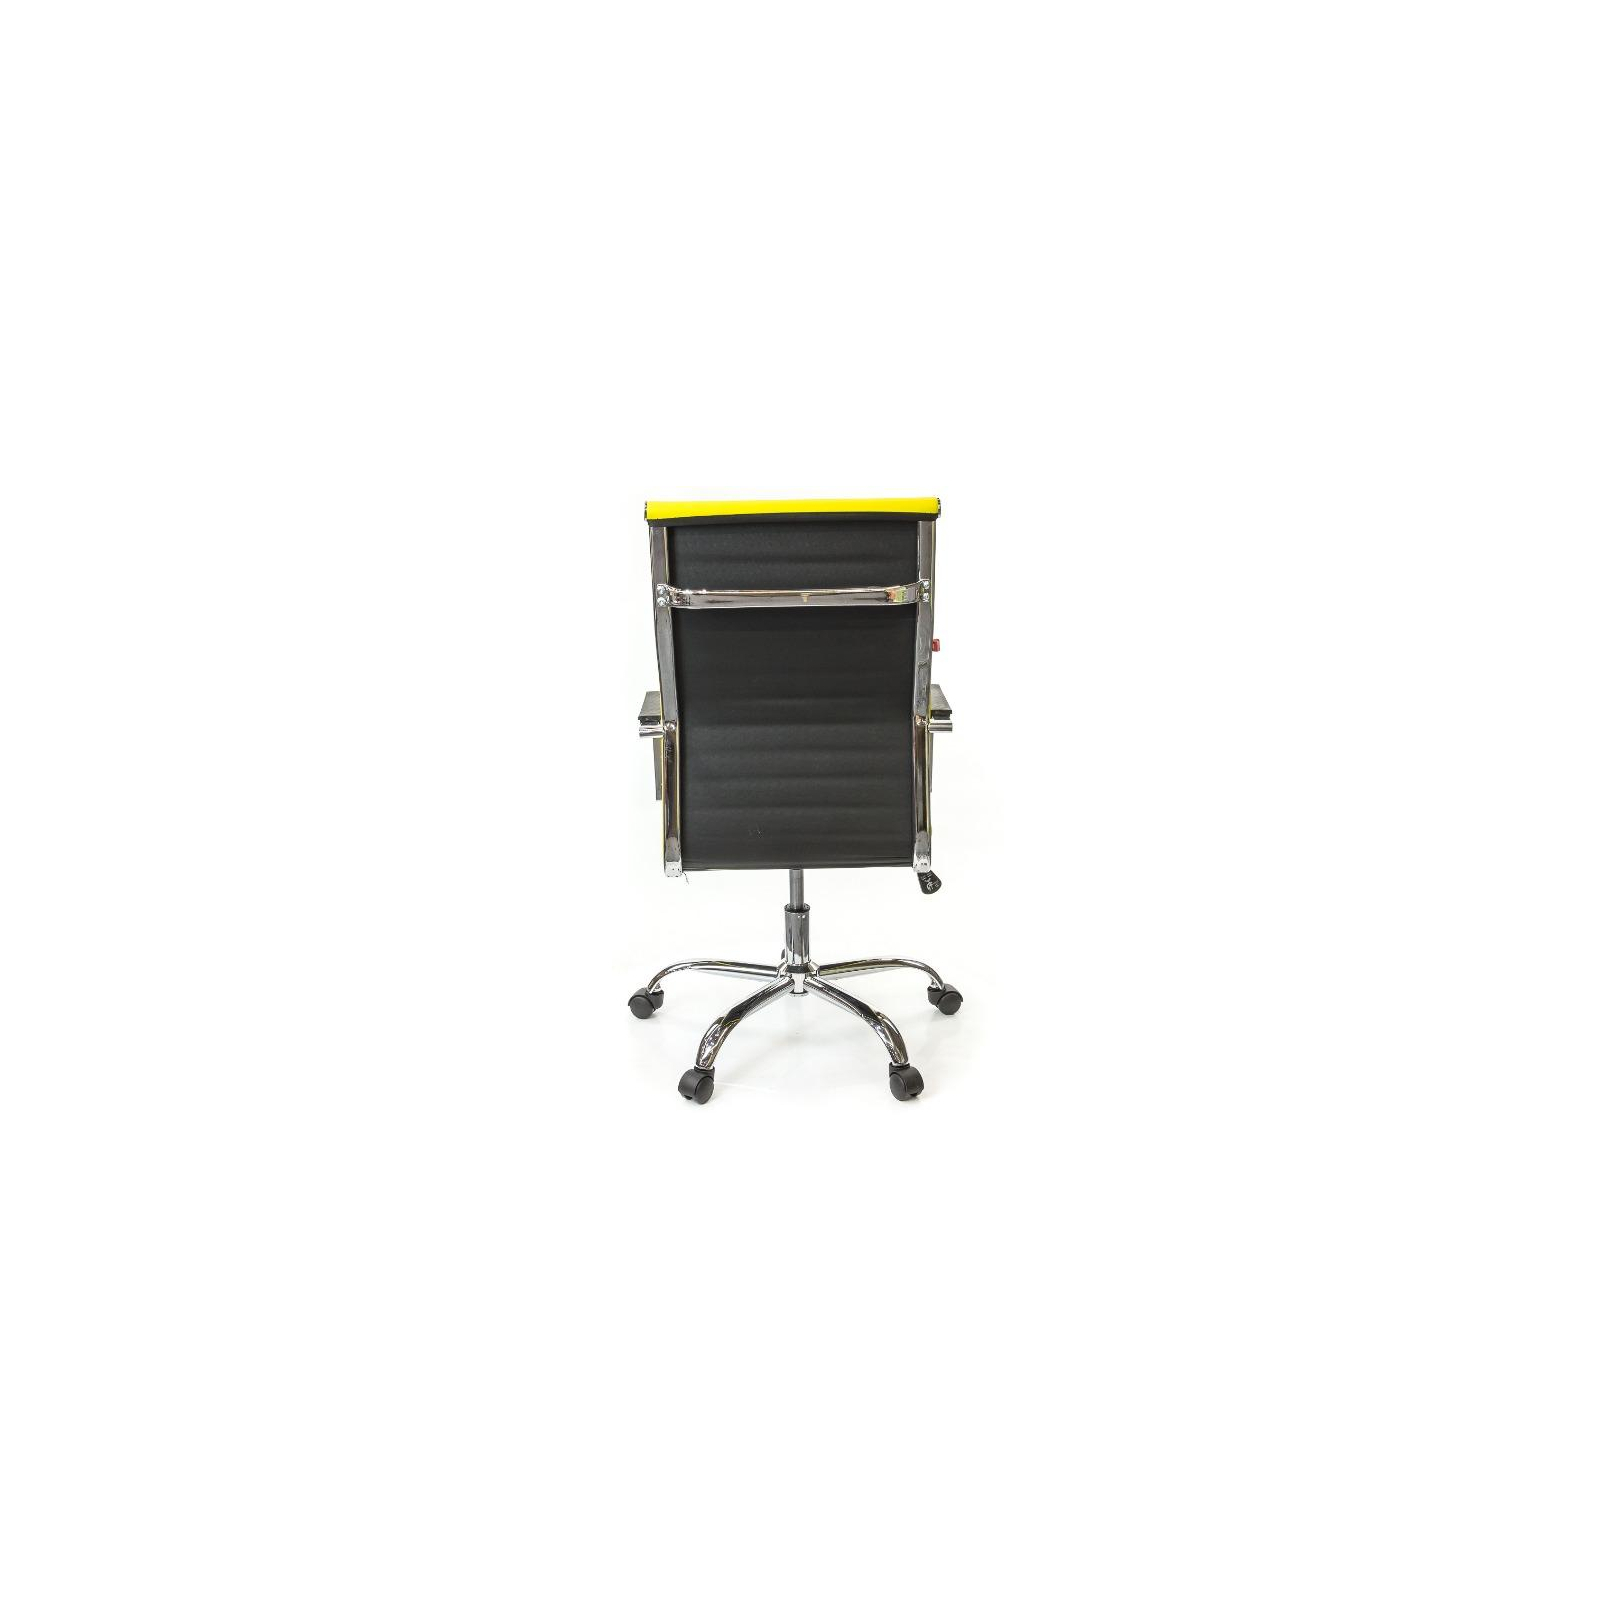 Офисное кресло Аклас Кап FX СН TILT Оранжевое (09905) изображение 5